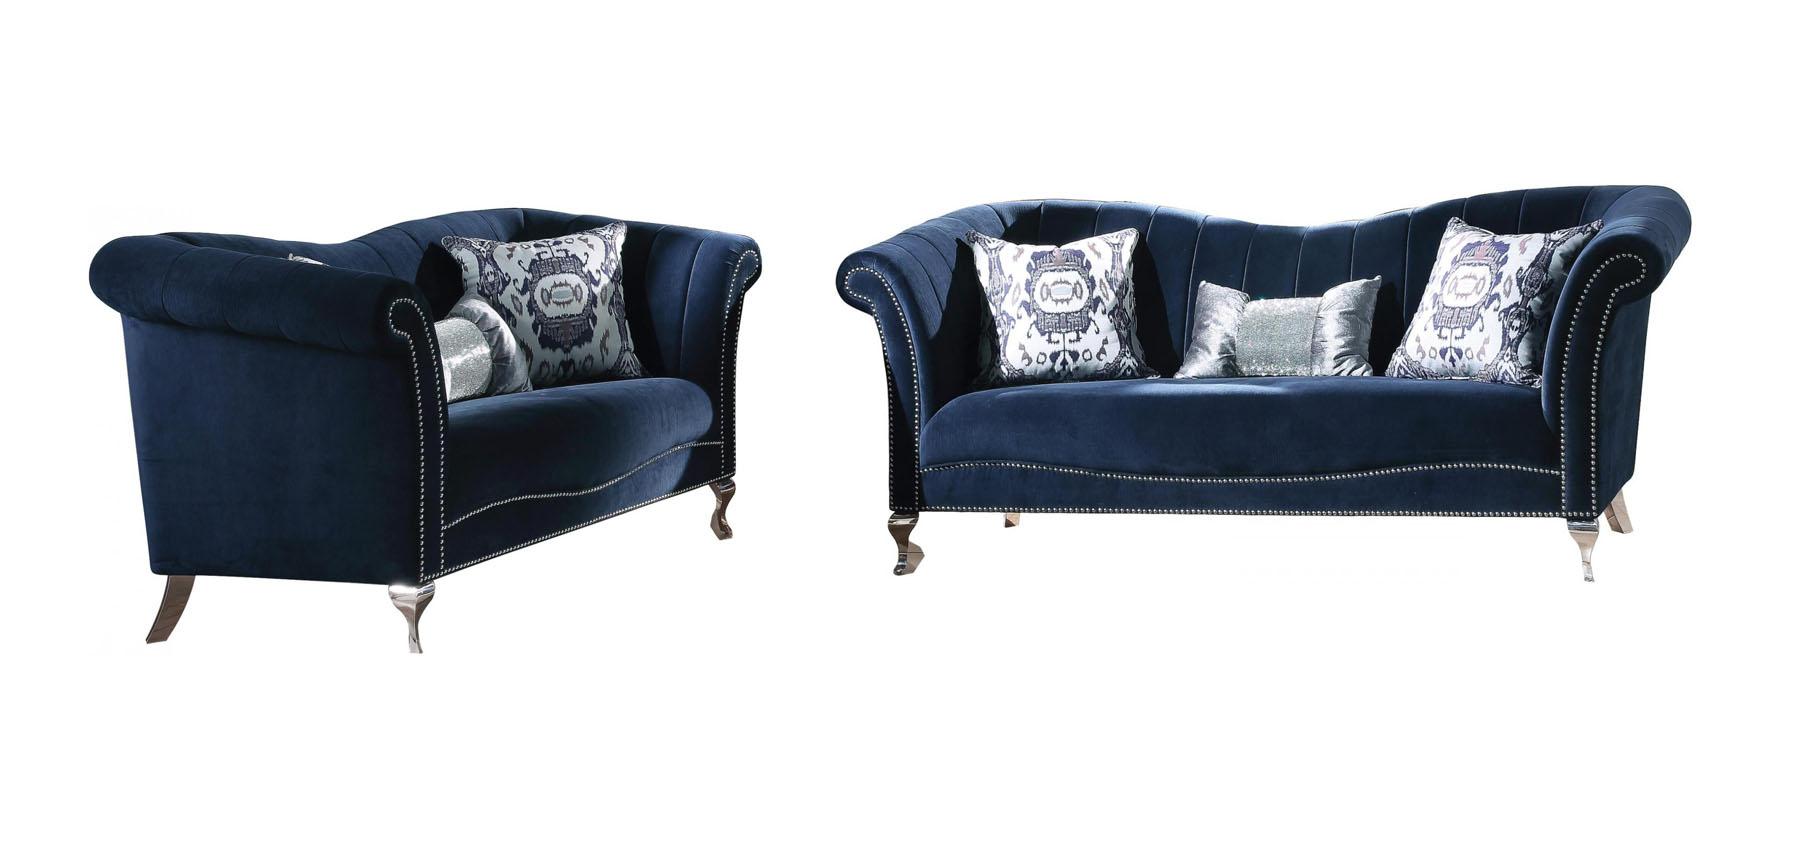 Traditional,  Vintage Sofa Loveseat Jaboros-50345 Jaborosa-50345-Set-2 in Blue Velvet